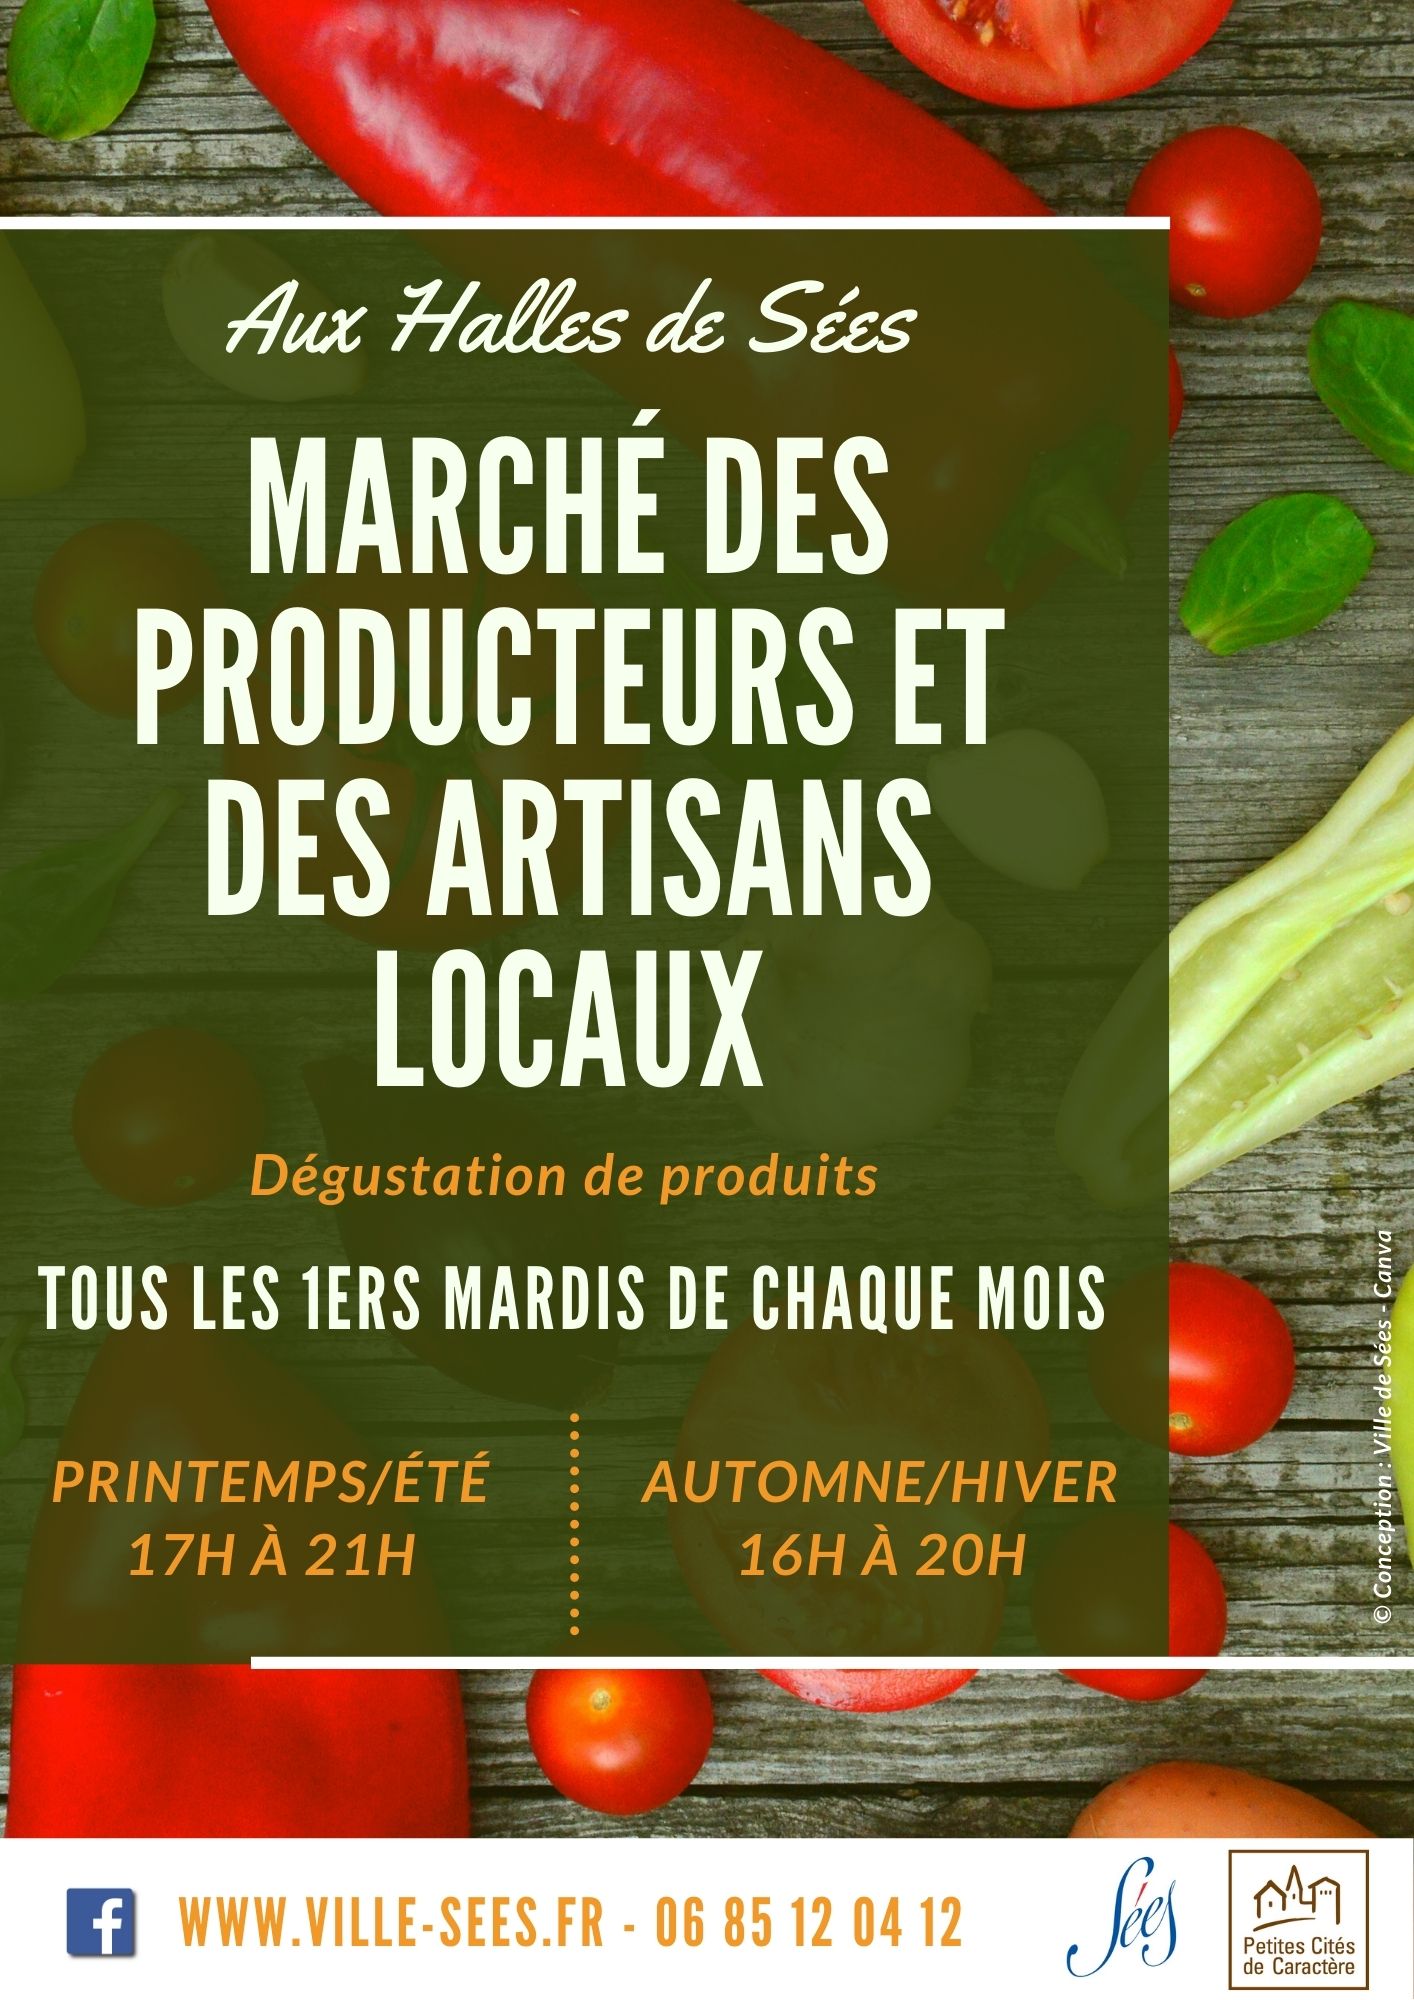 Marché Des Producteurs Et Des Artisans Locaux Sees En Normandie Cdt De Lorne 